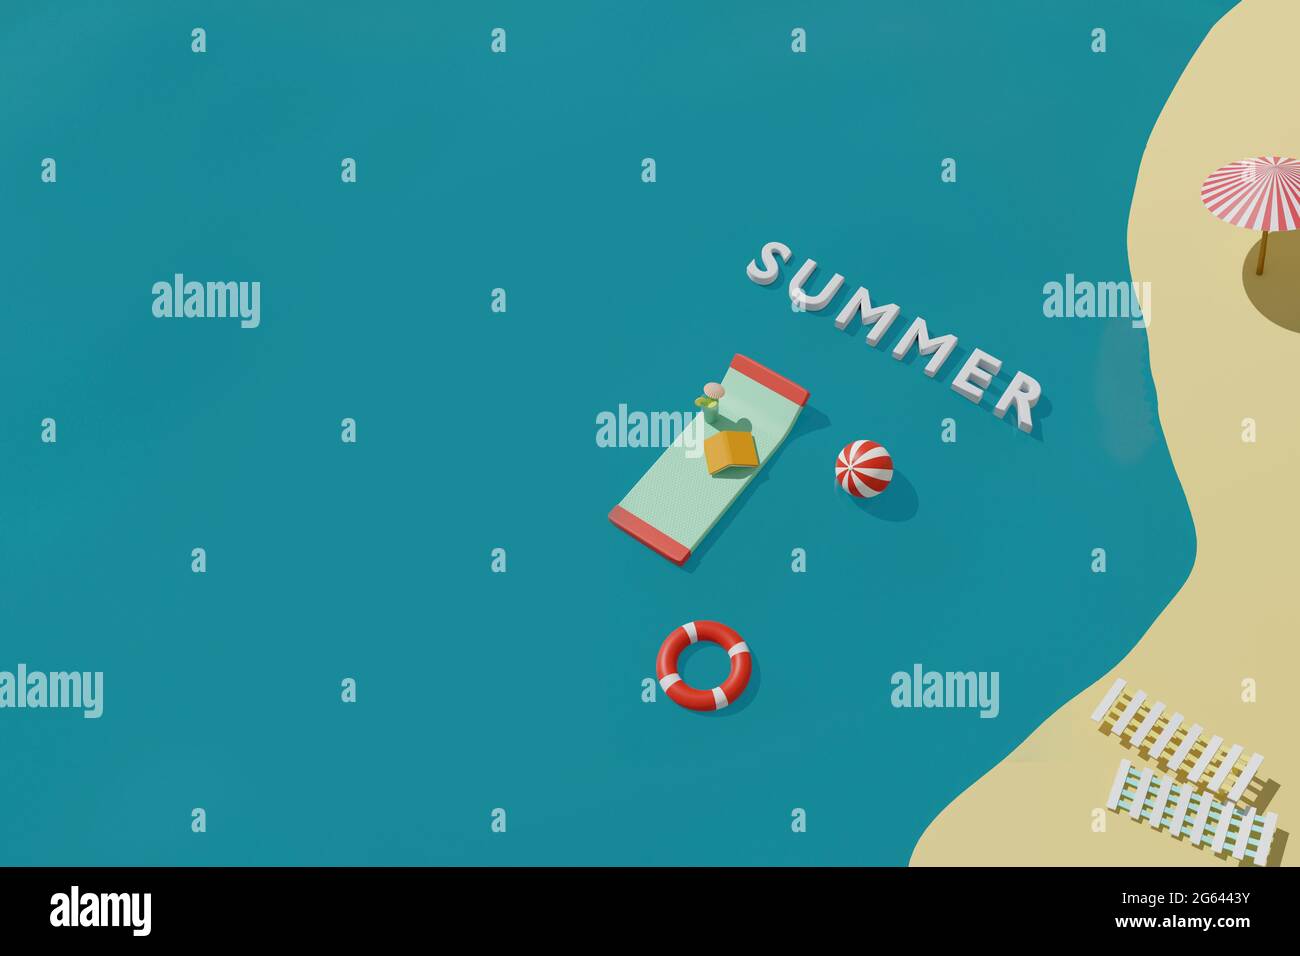 3D render de verano playa con colchón inflable para nadar, libro, pelota y boya en el mar. Concepto de vacaciones de viaje de verano Foto de stock